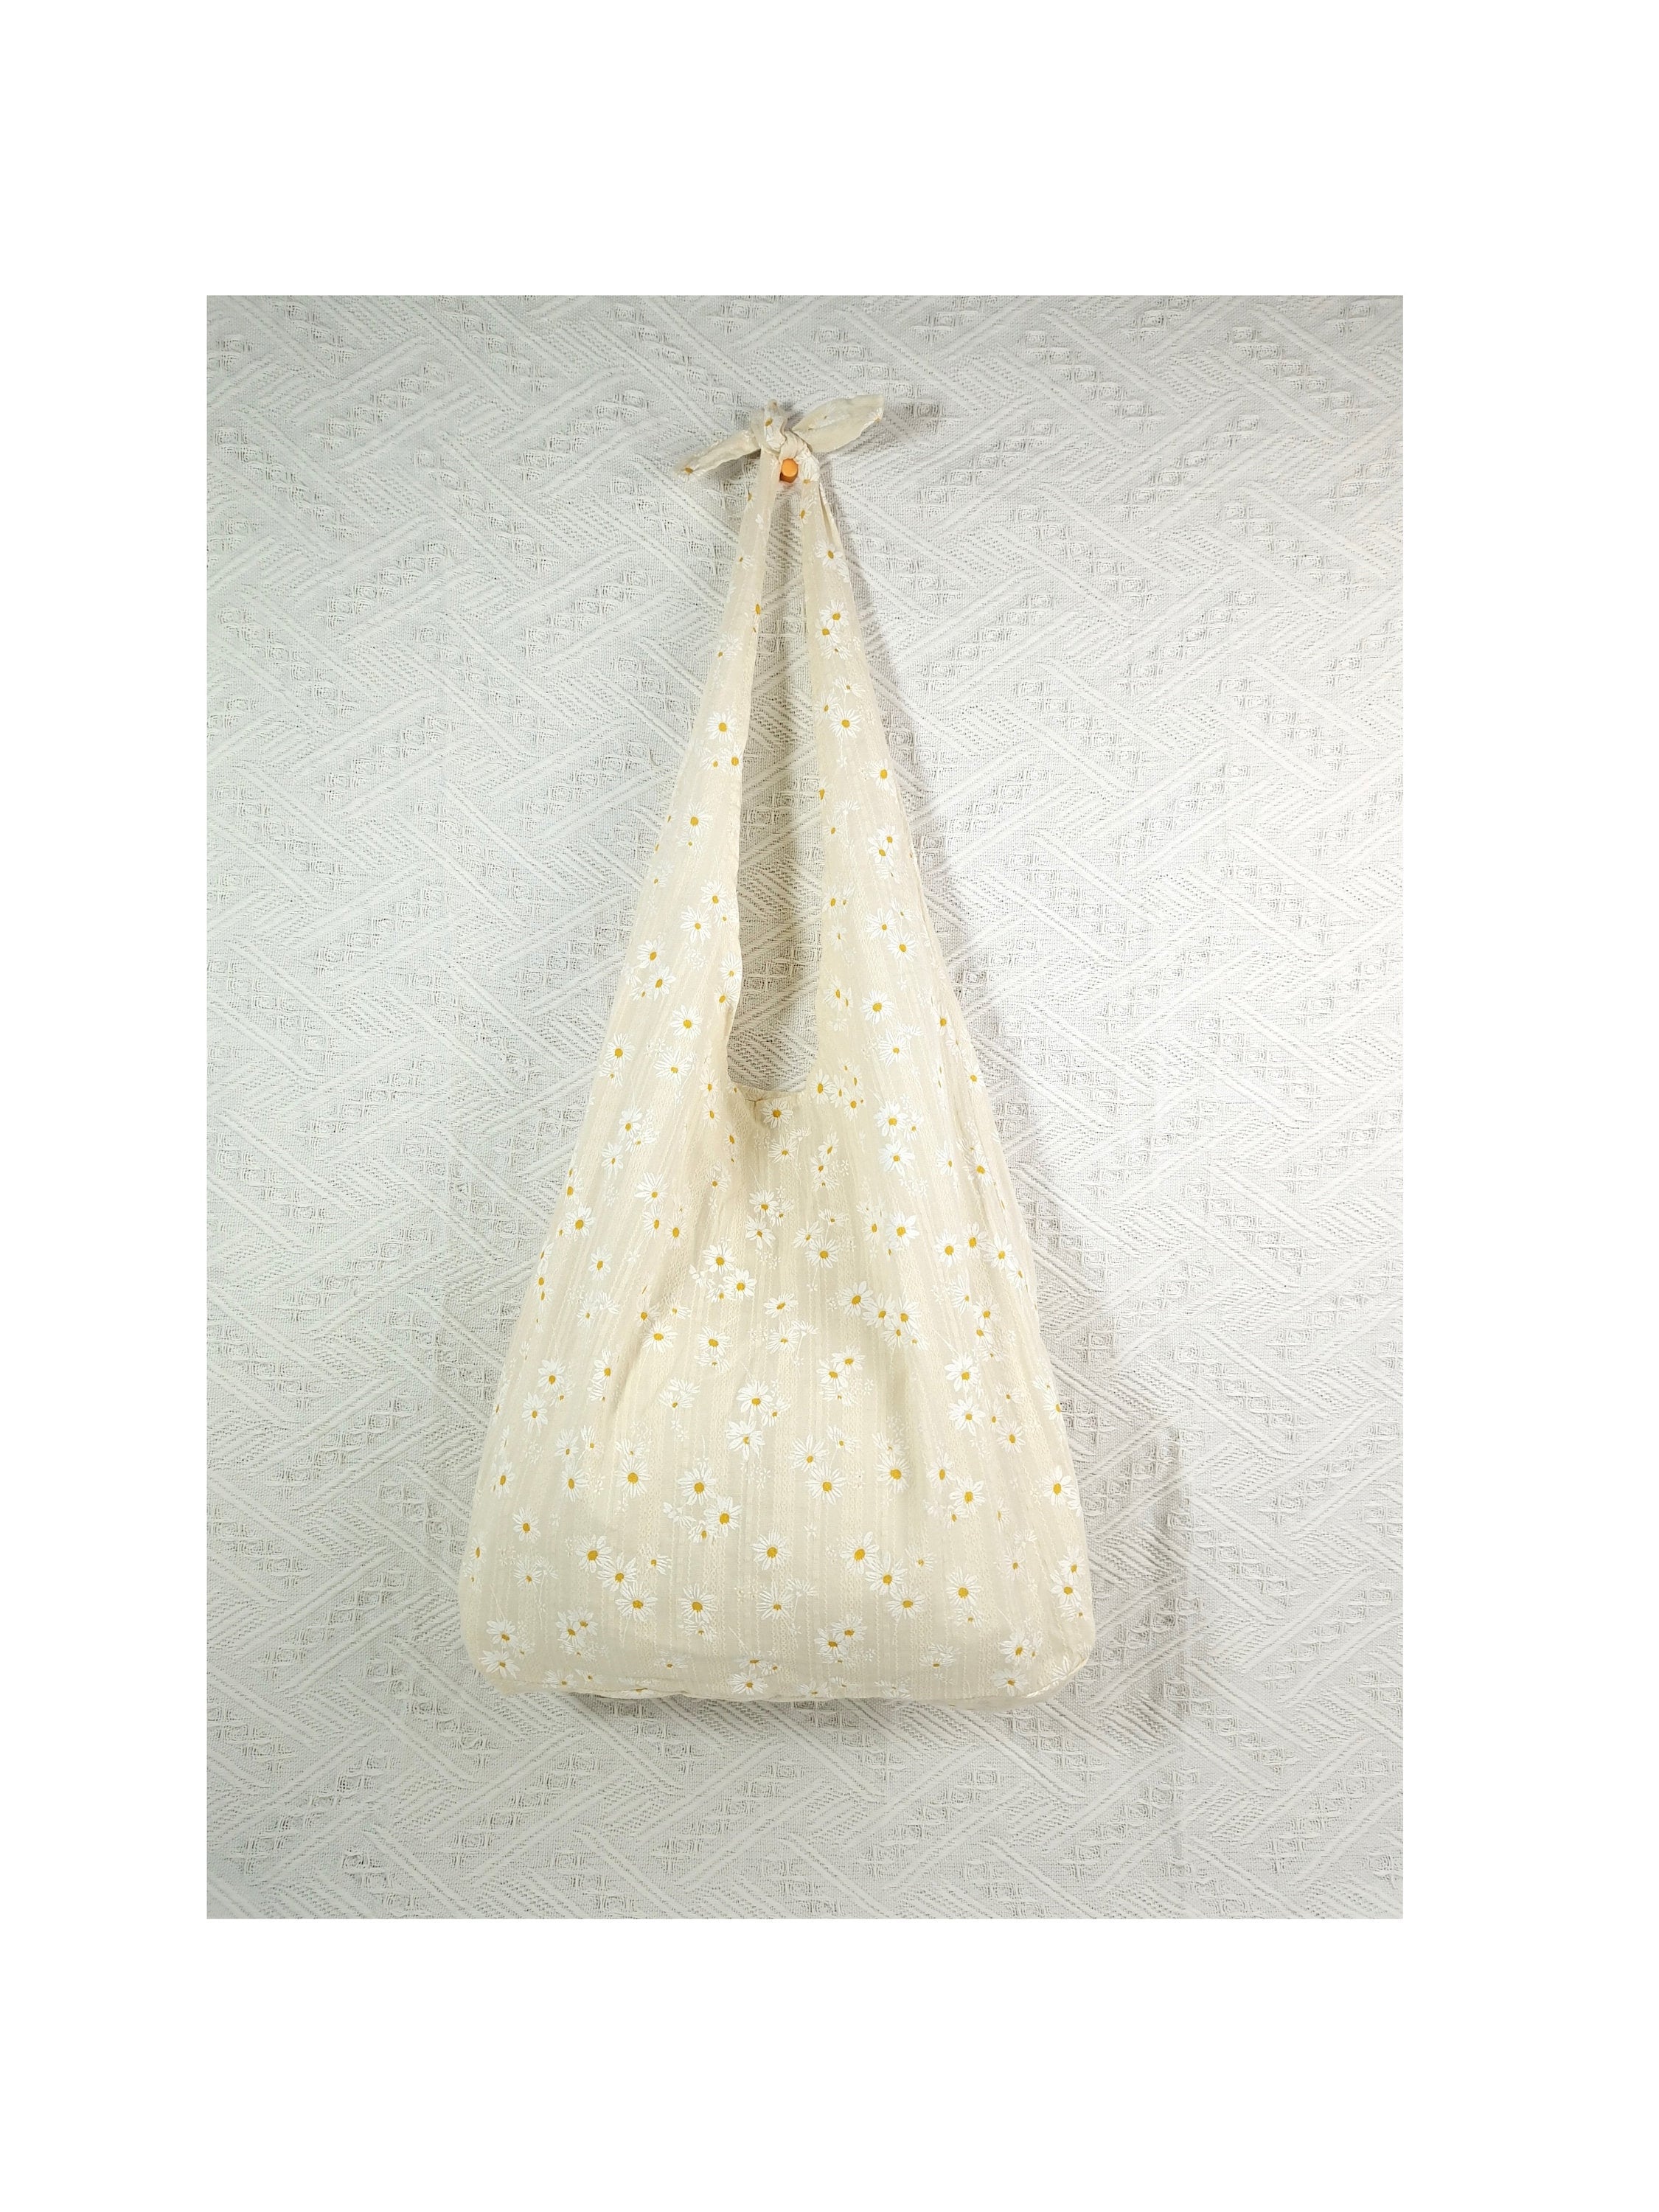 Embroidered Daisy Bag tote bag, linen tote bag, market bag, linen bag, adjustable bag, gift for her  travel bag，beach bag